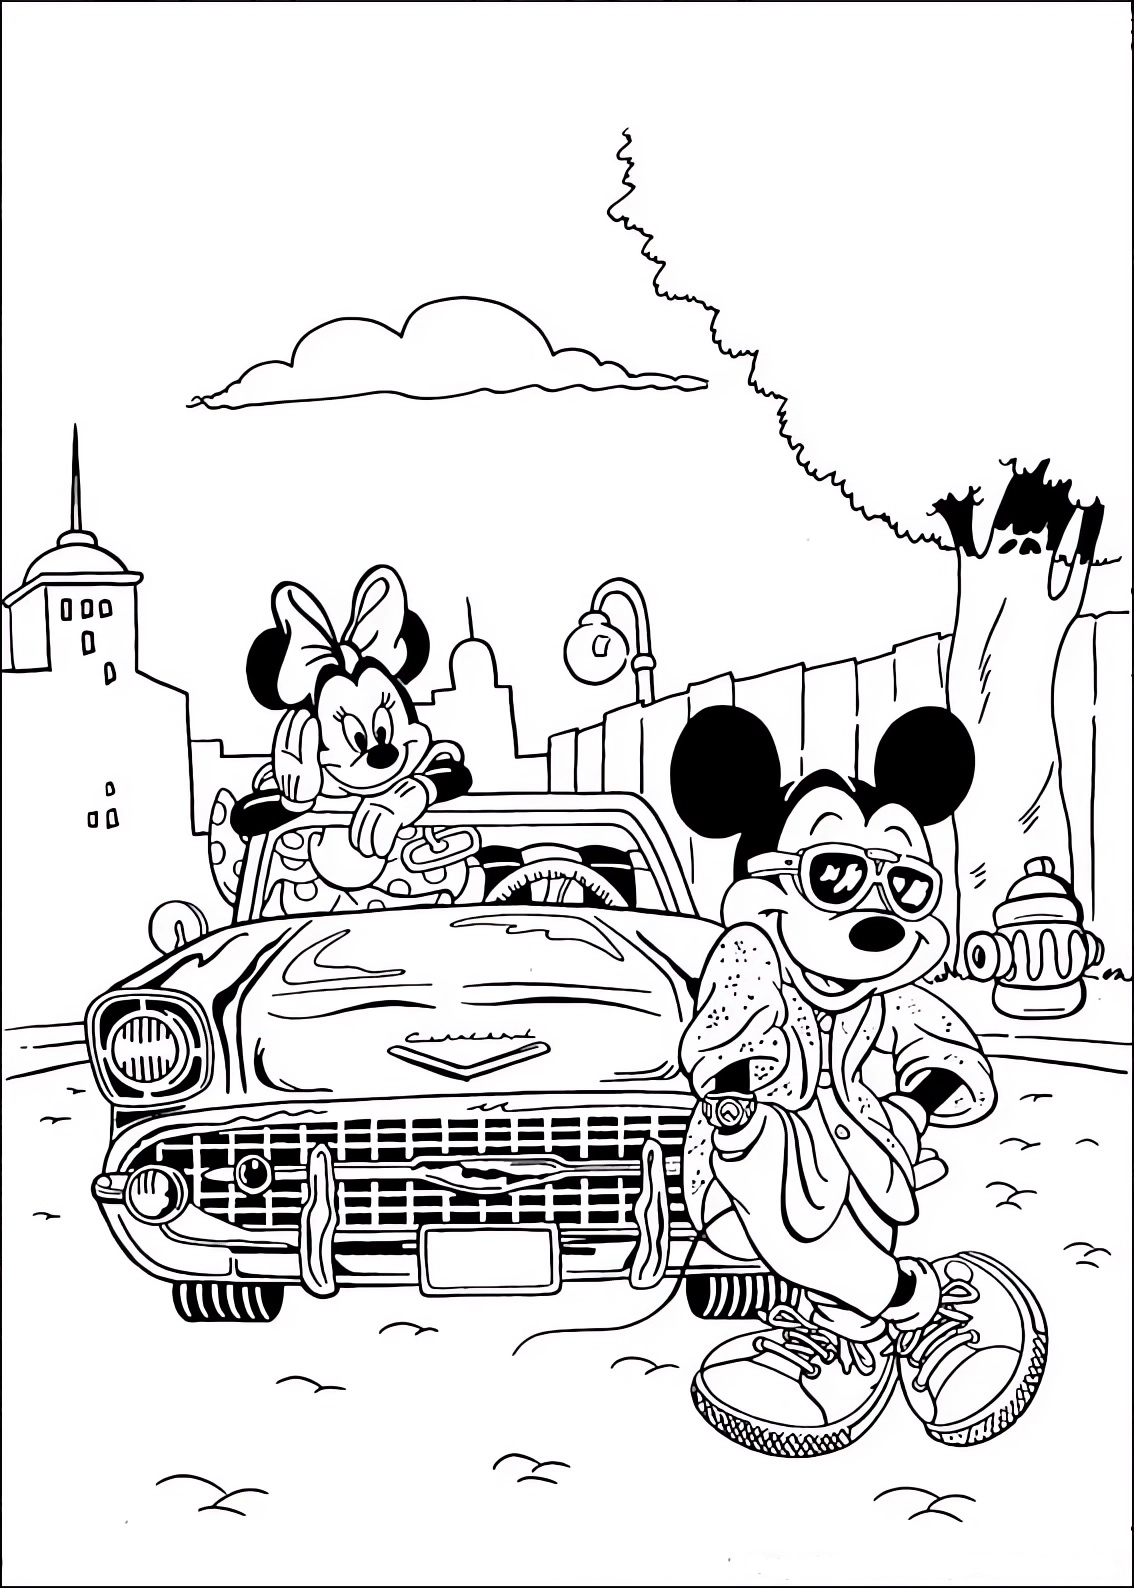 Disegno da colorare di Minnie e Topolino (Mickey Mouse) con l'auto e l'abbigliamento cool  